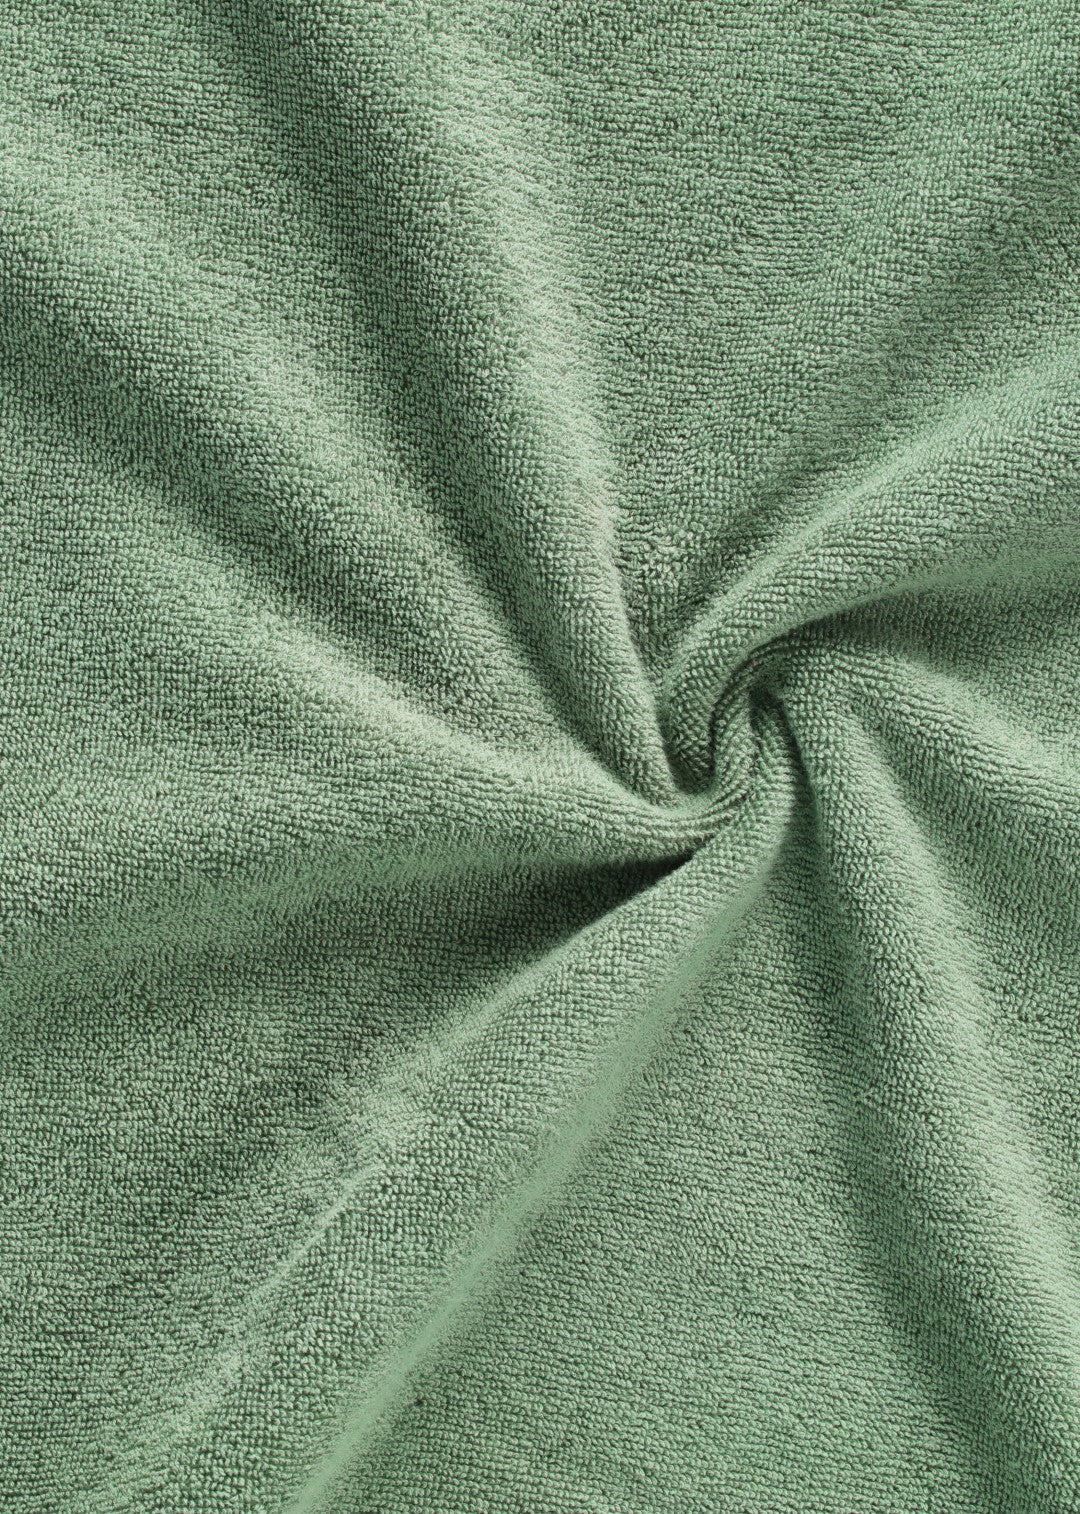 Handtuch Baumwolle Dunkelgrün 100 x 150 cm